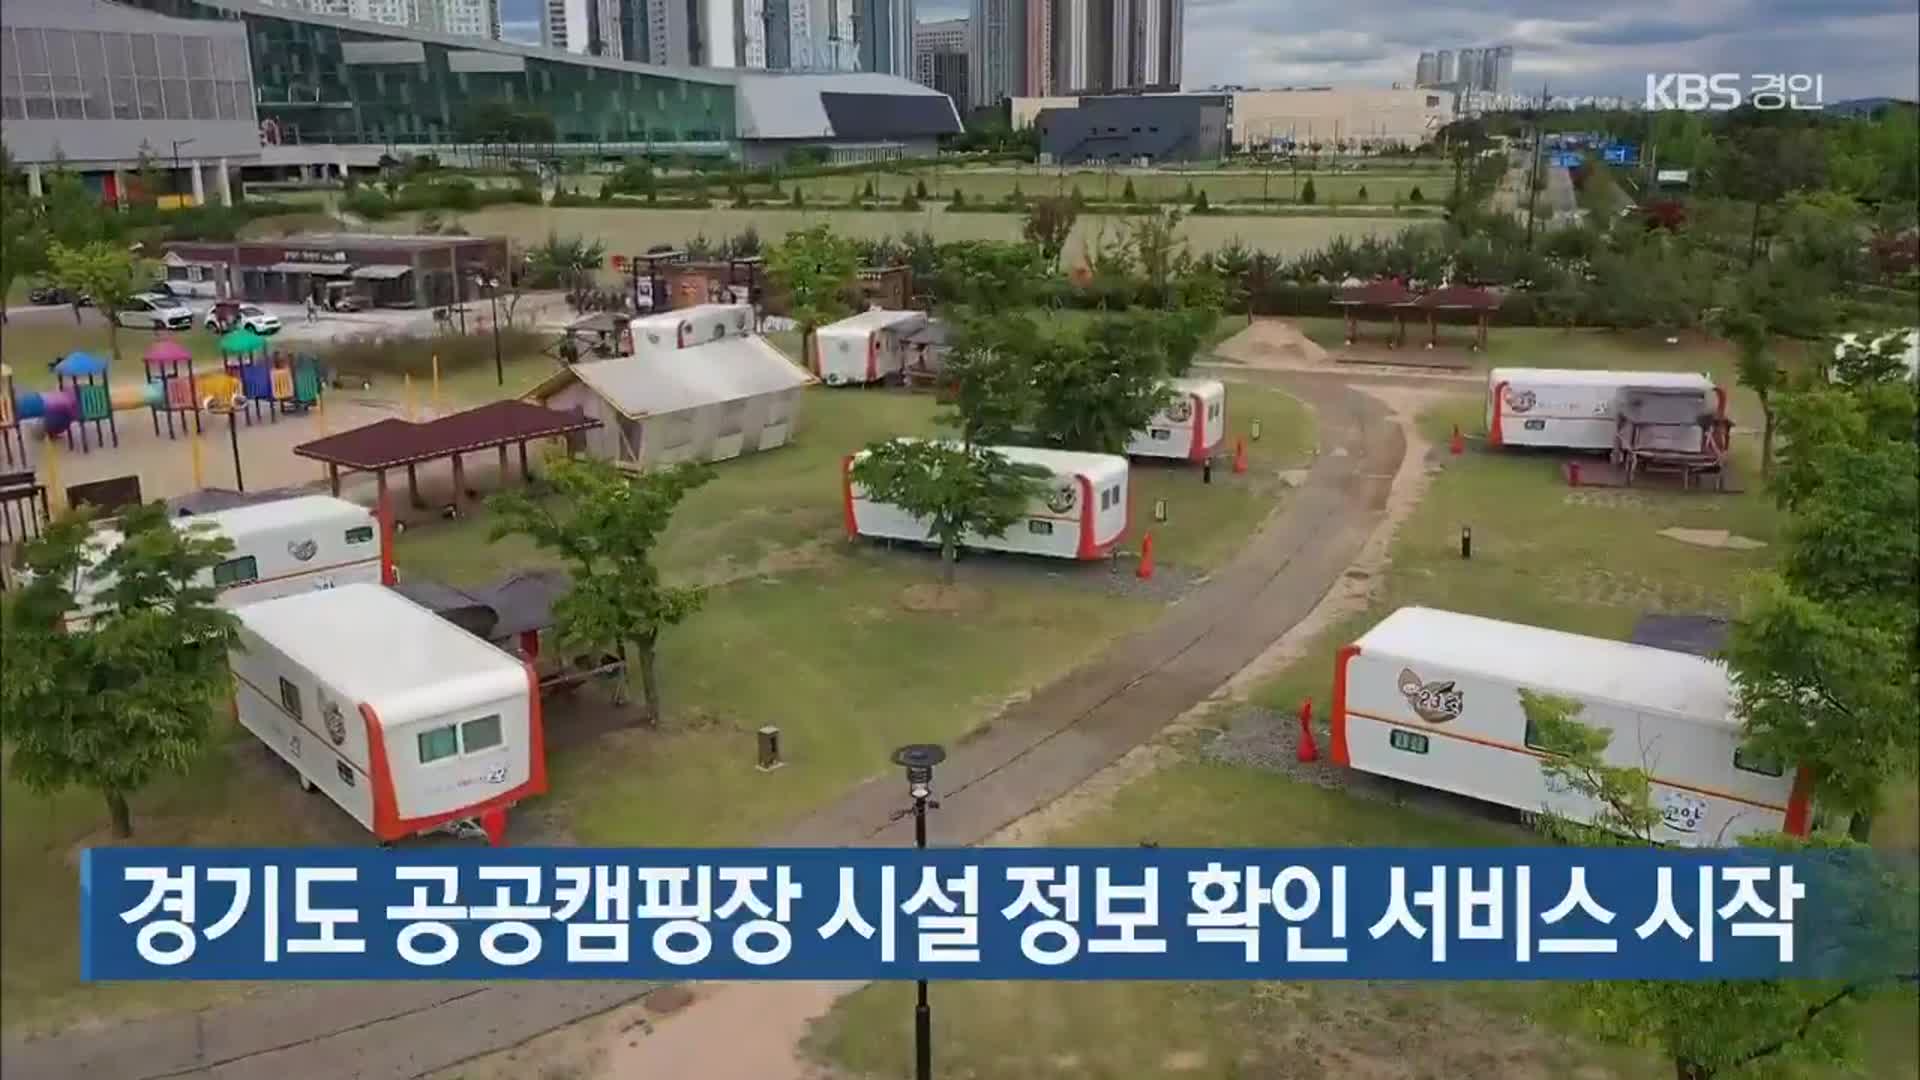 경기도 공공캠핑장 시설 정보 확인 서비스 시작